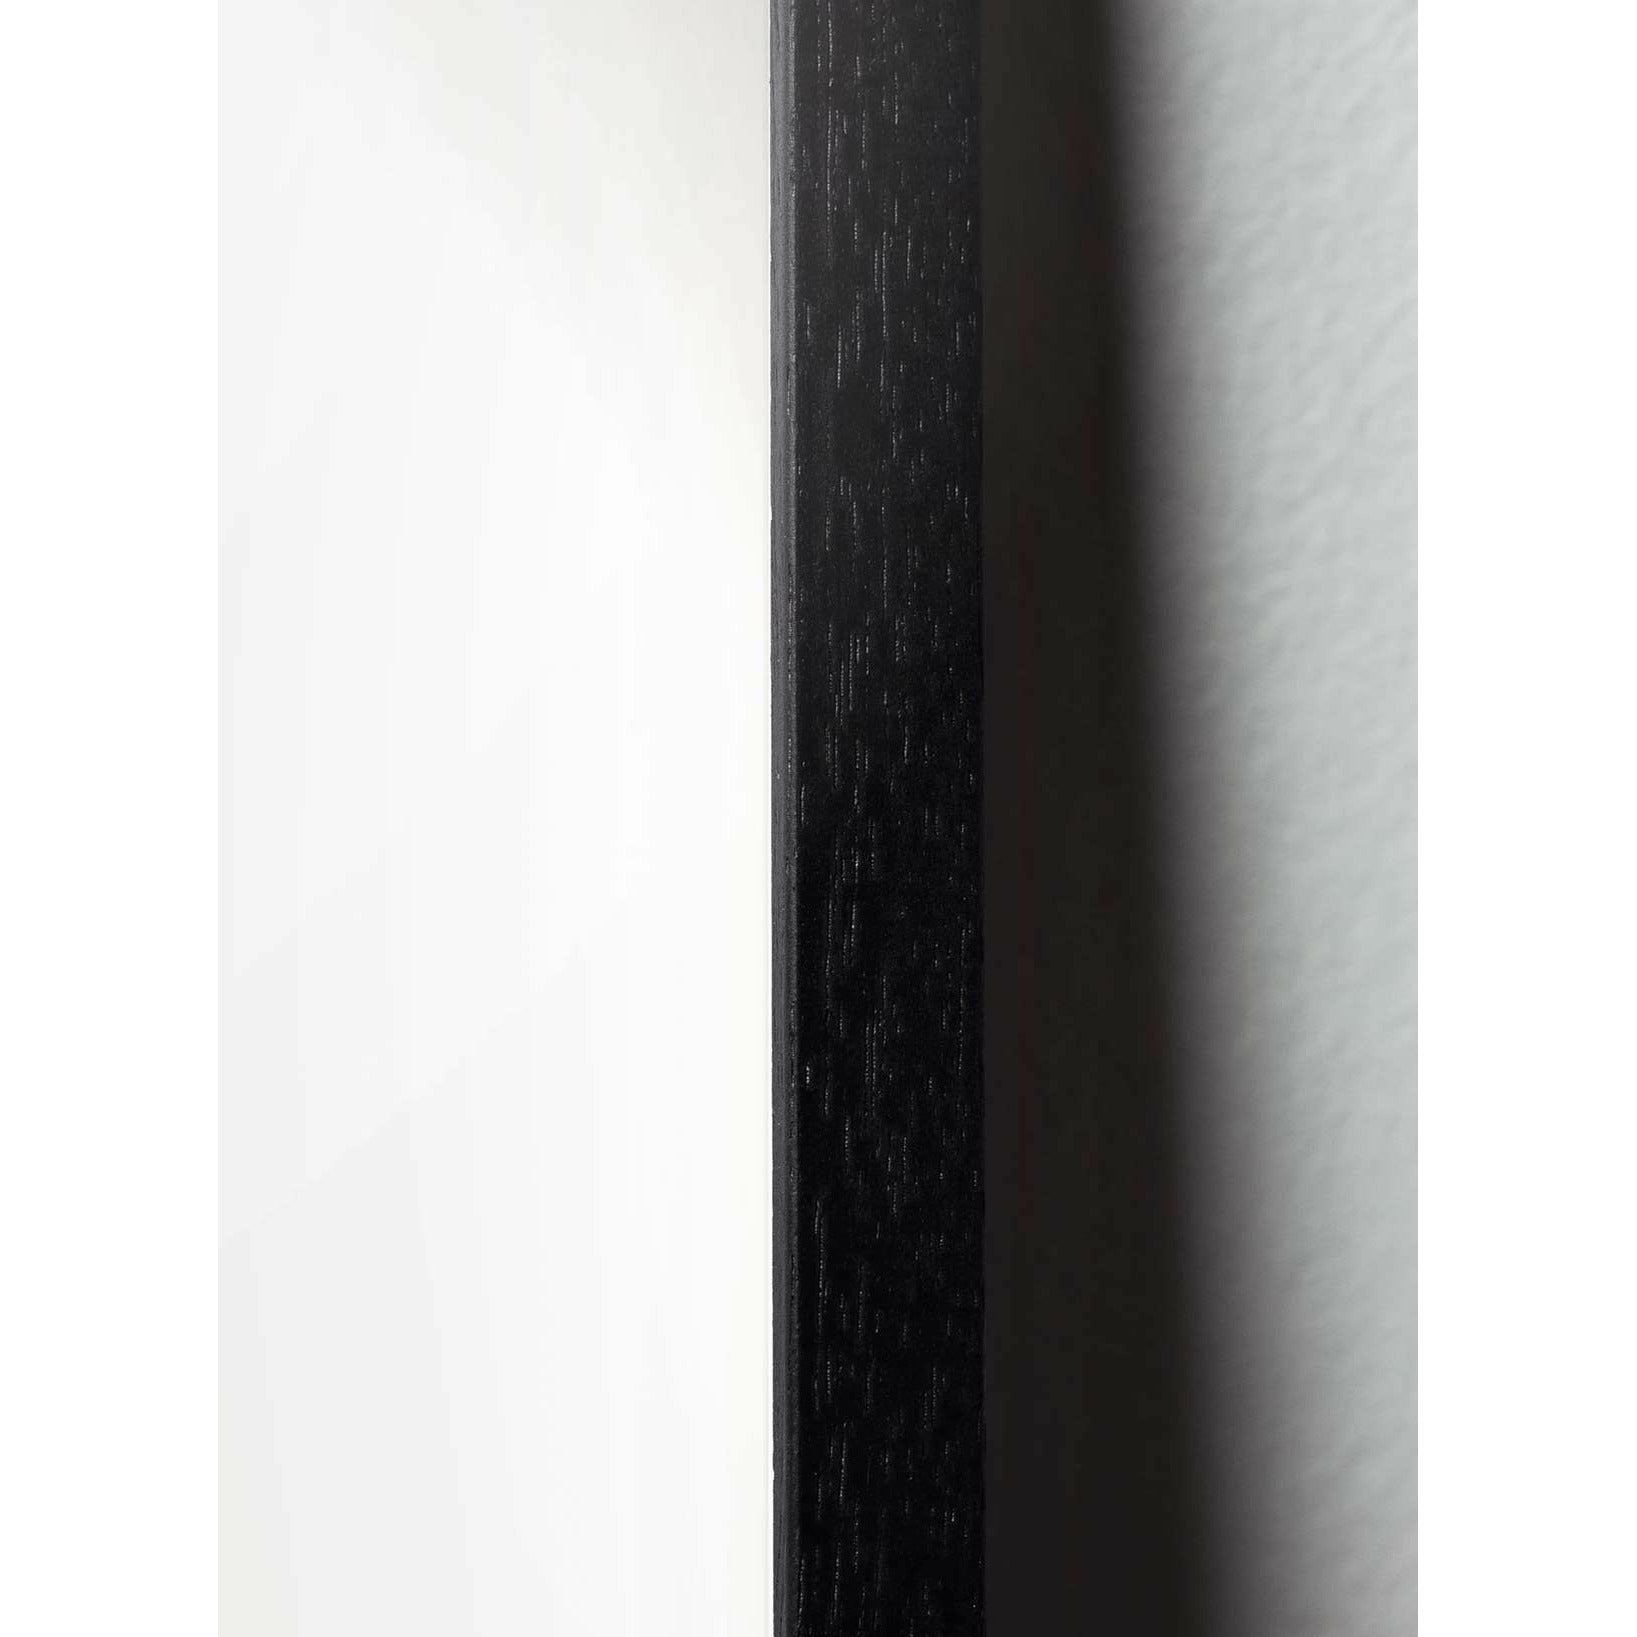 Brainchild Teddy Bear Classic -Poster, Rahmen aus schwarz lackiertem Holz 50x70 cm, sandfarbener Hintergrund